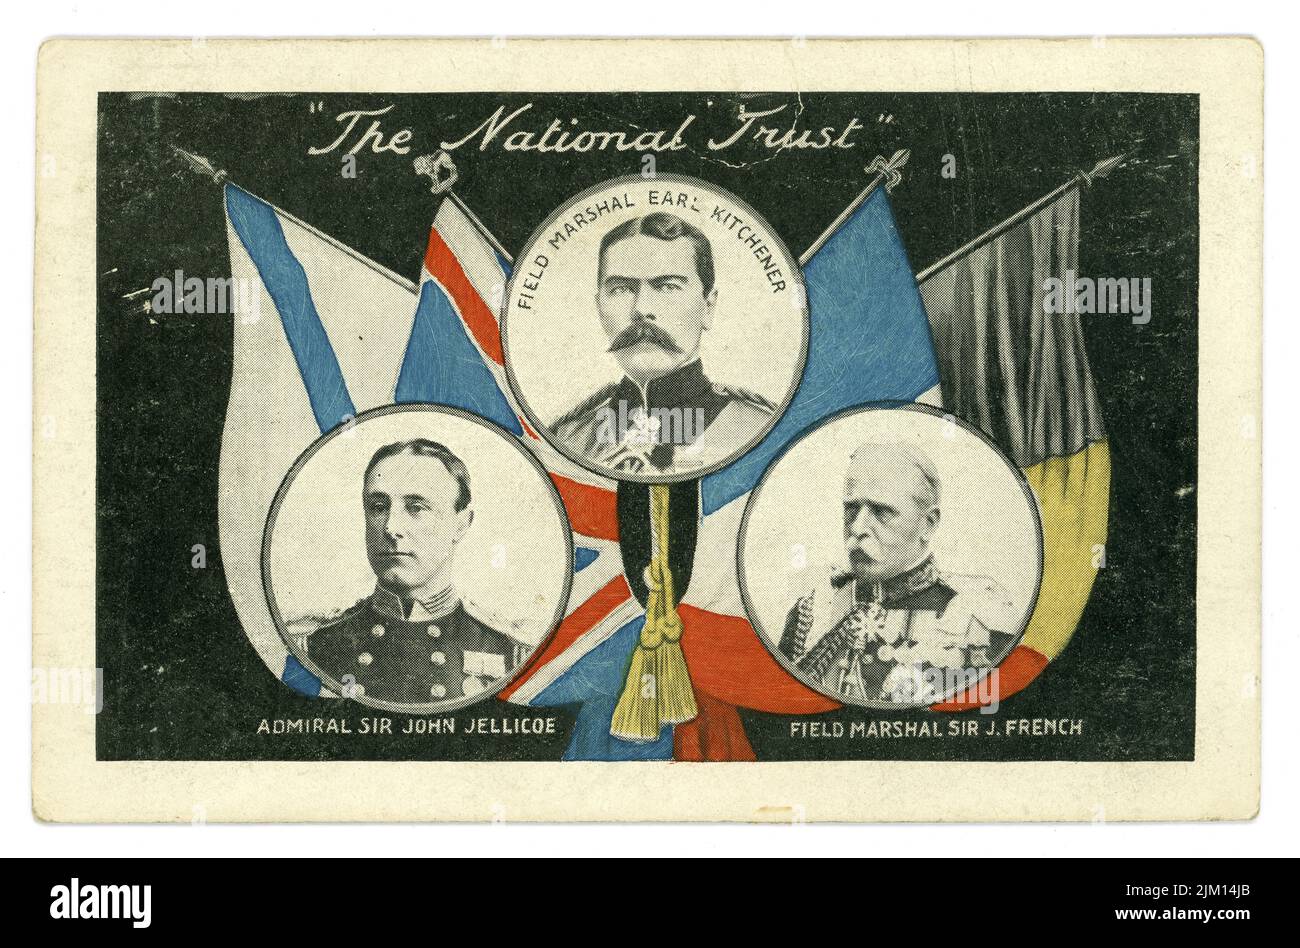 Cartolina originale del WW1, 'The National Trust' Field Marshals Earl Kitchener e Sir J. French, Ammiraglio Sir John Jellicoe, (Supreme Command Home Fleets nel 1914) con bandiere alleate, Regno Unito Foto Stock